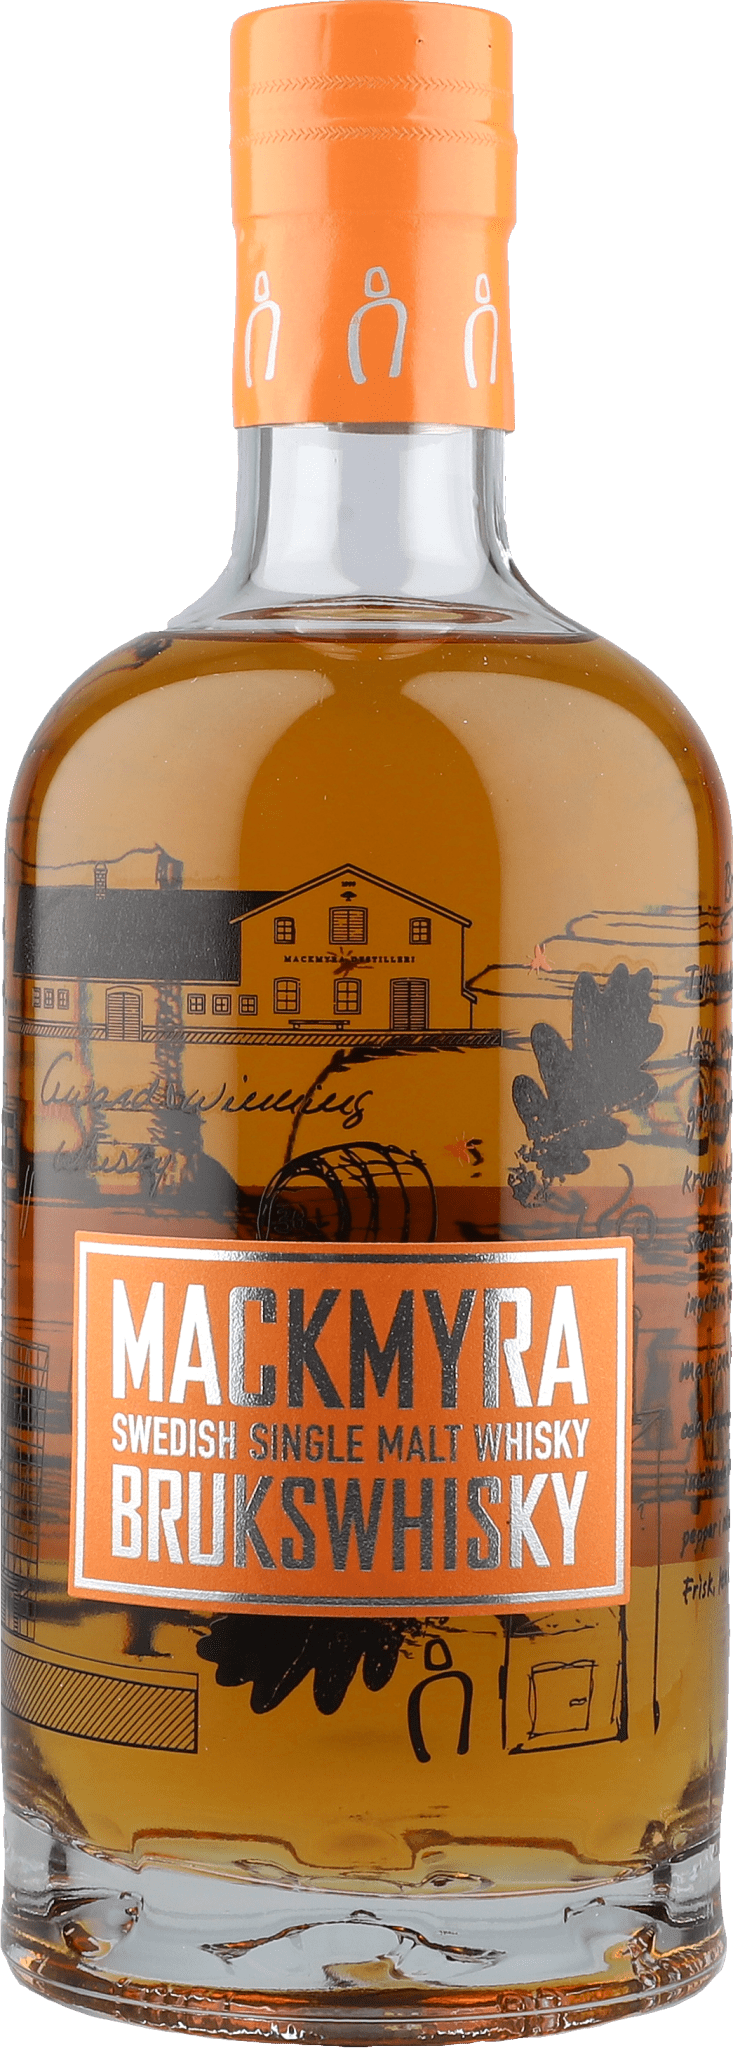 Mackmyra Brukswhisky 41,4% 0,7 ltr. - AllSpirits